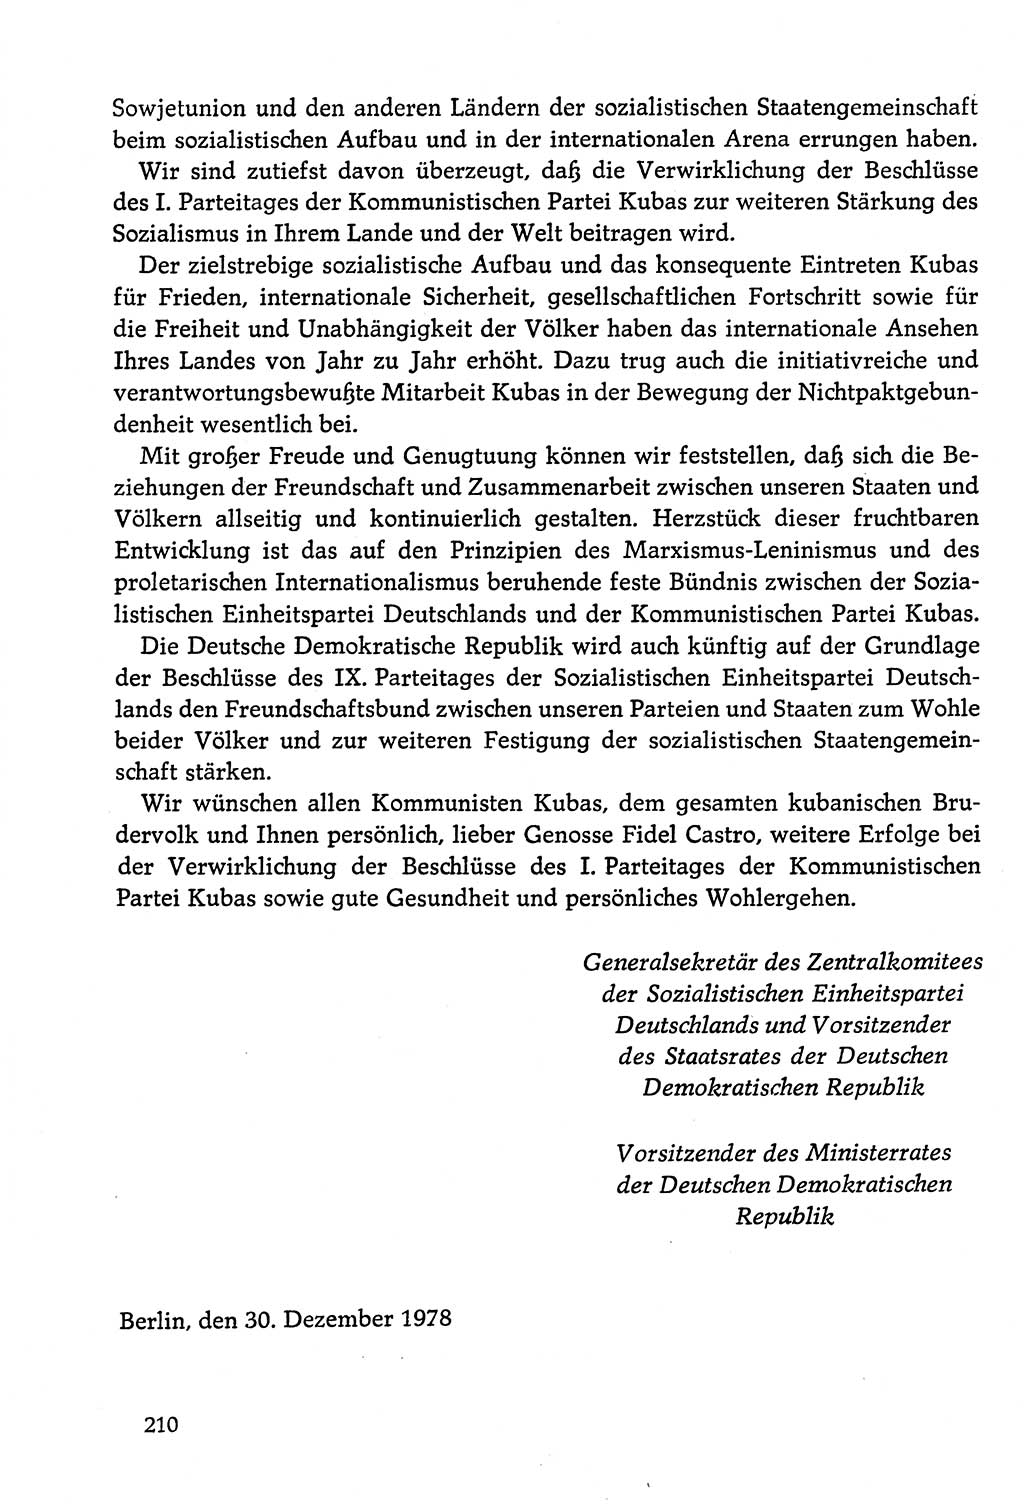 Dokumente der Sozialistischen Einheitspartei Deutschlands (SED) [Deutsche Demokratische Republik (DDR)] 1978-1979, Seite 210 (Dok. SED DDR 1978-1979, S. 210)